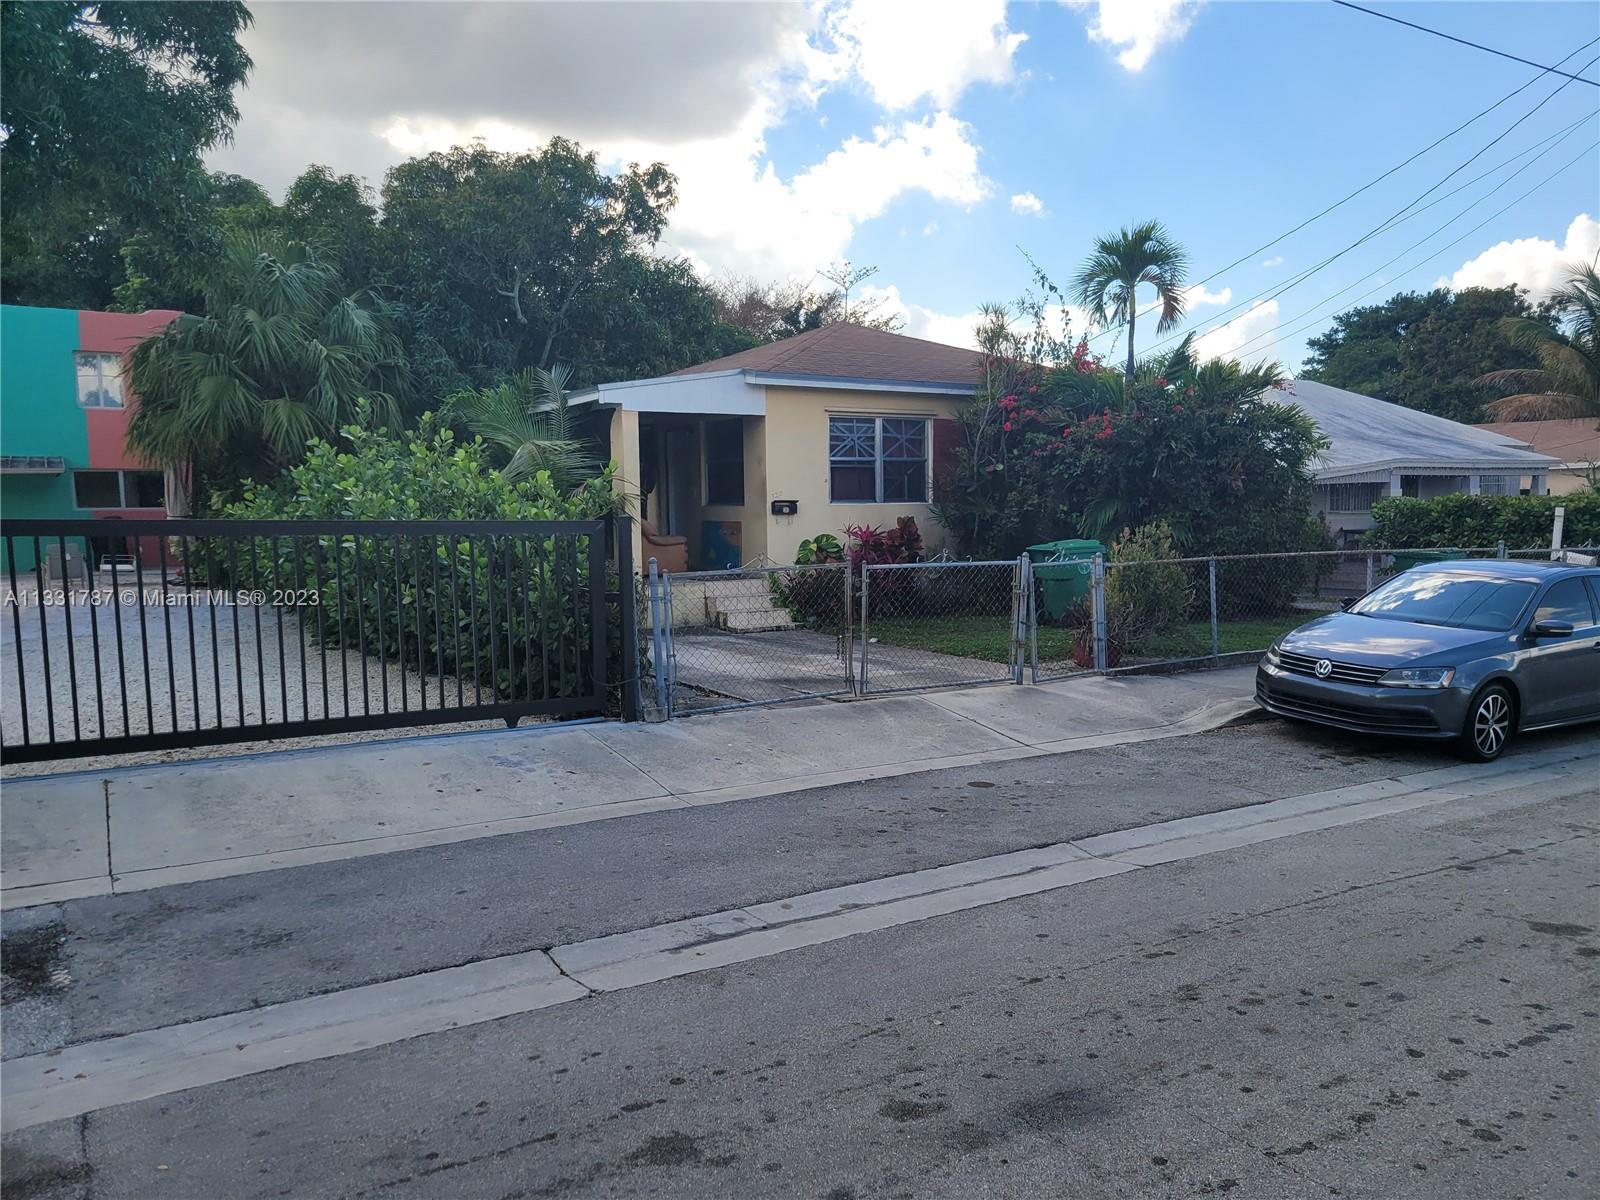 Rental Property at 320 Nw 32nd St St, Miami, Broward County, Florida -  - $1,395,000 MO.